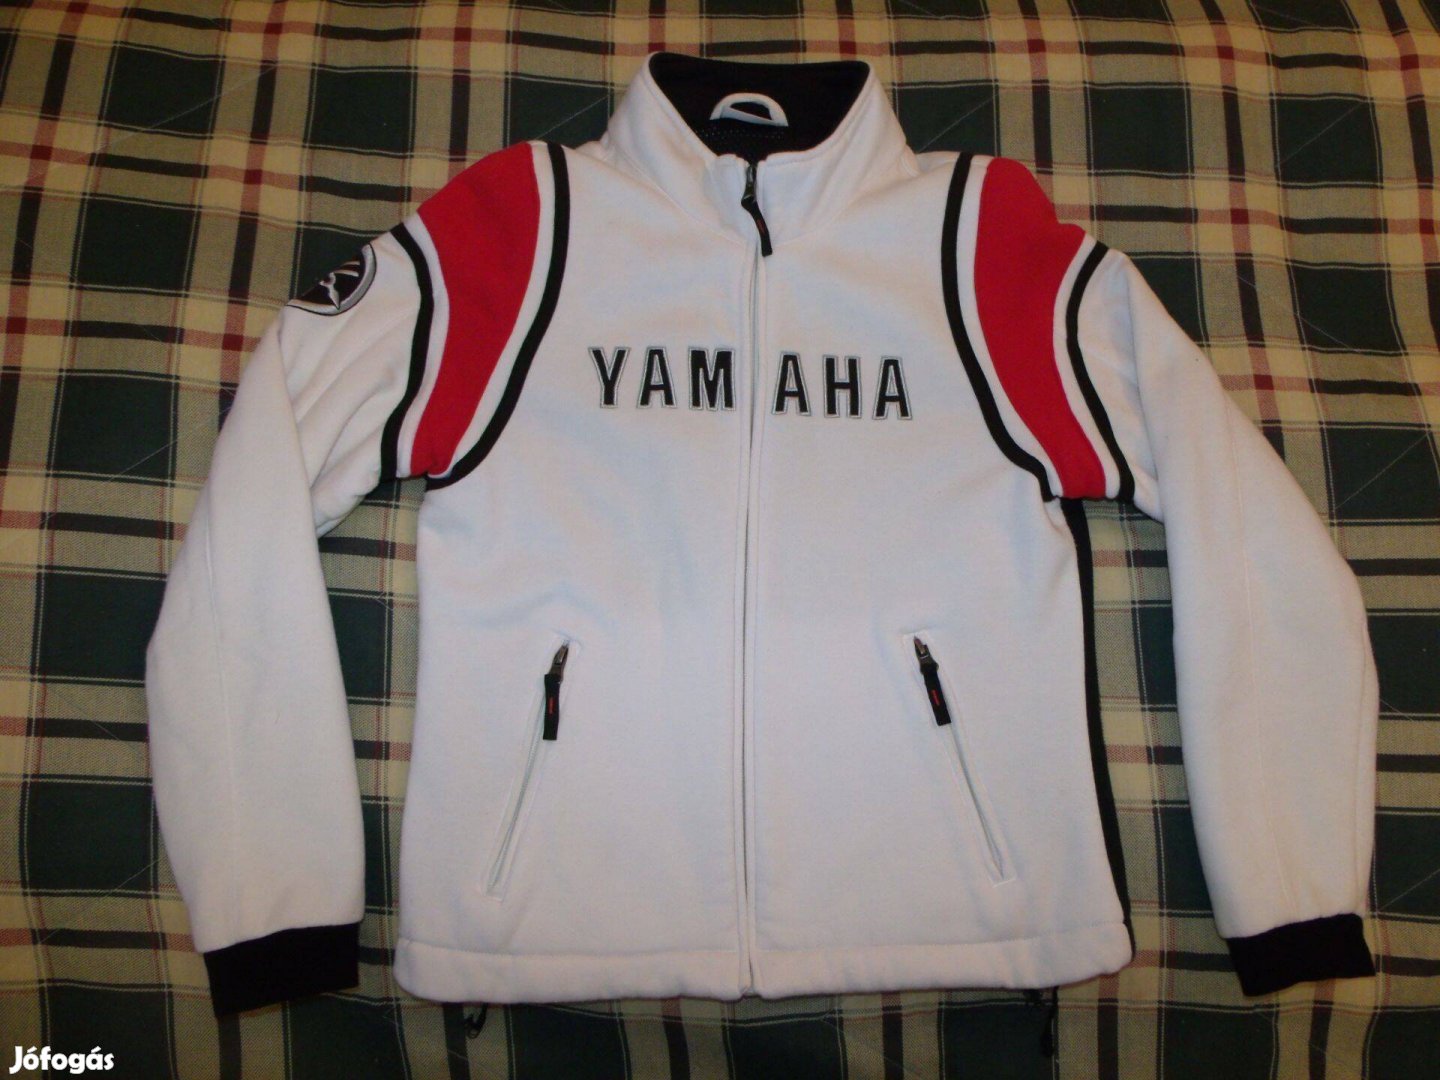 Yamaha eredeti pulóver, női S méret, pulcsi, szép